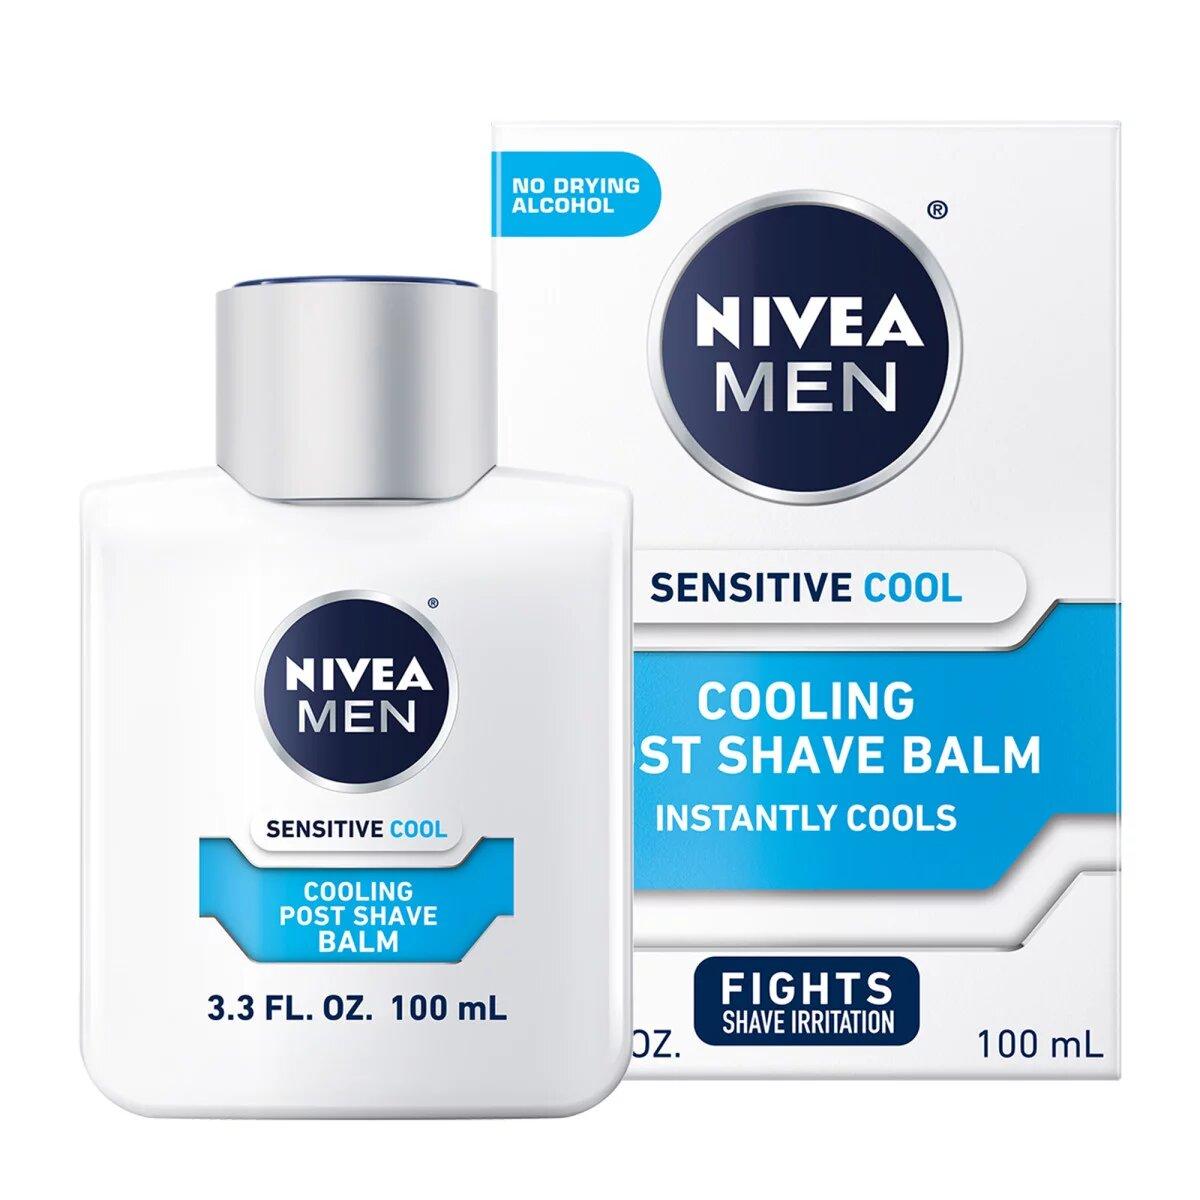 NIVEA MEN Sensitive Cooling Balsam posle brijanja, 100ml